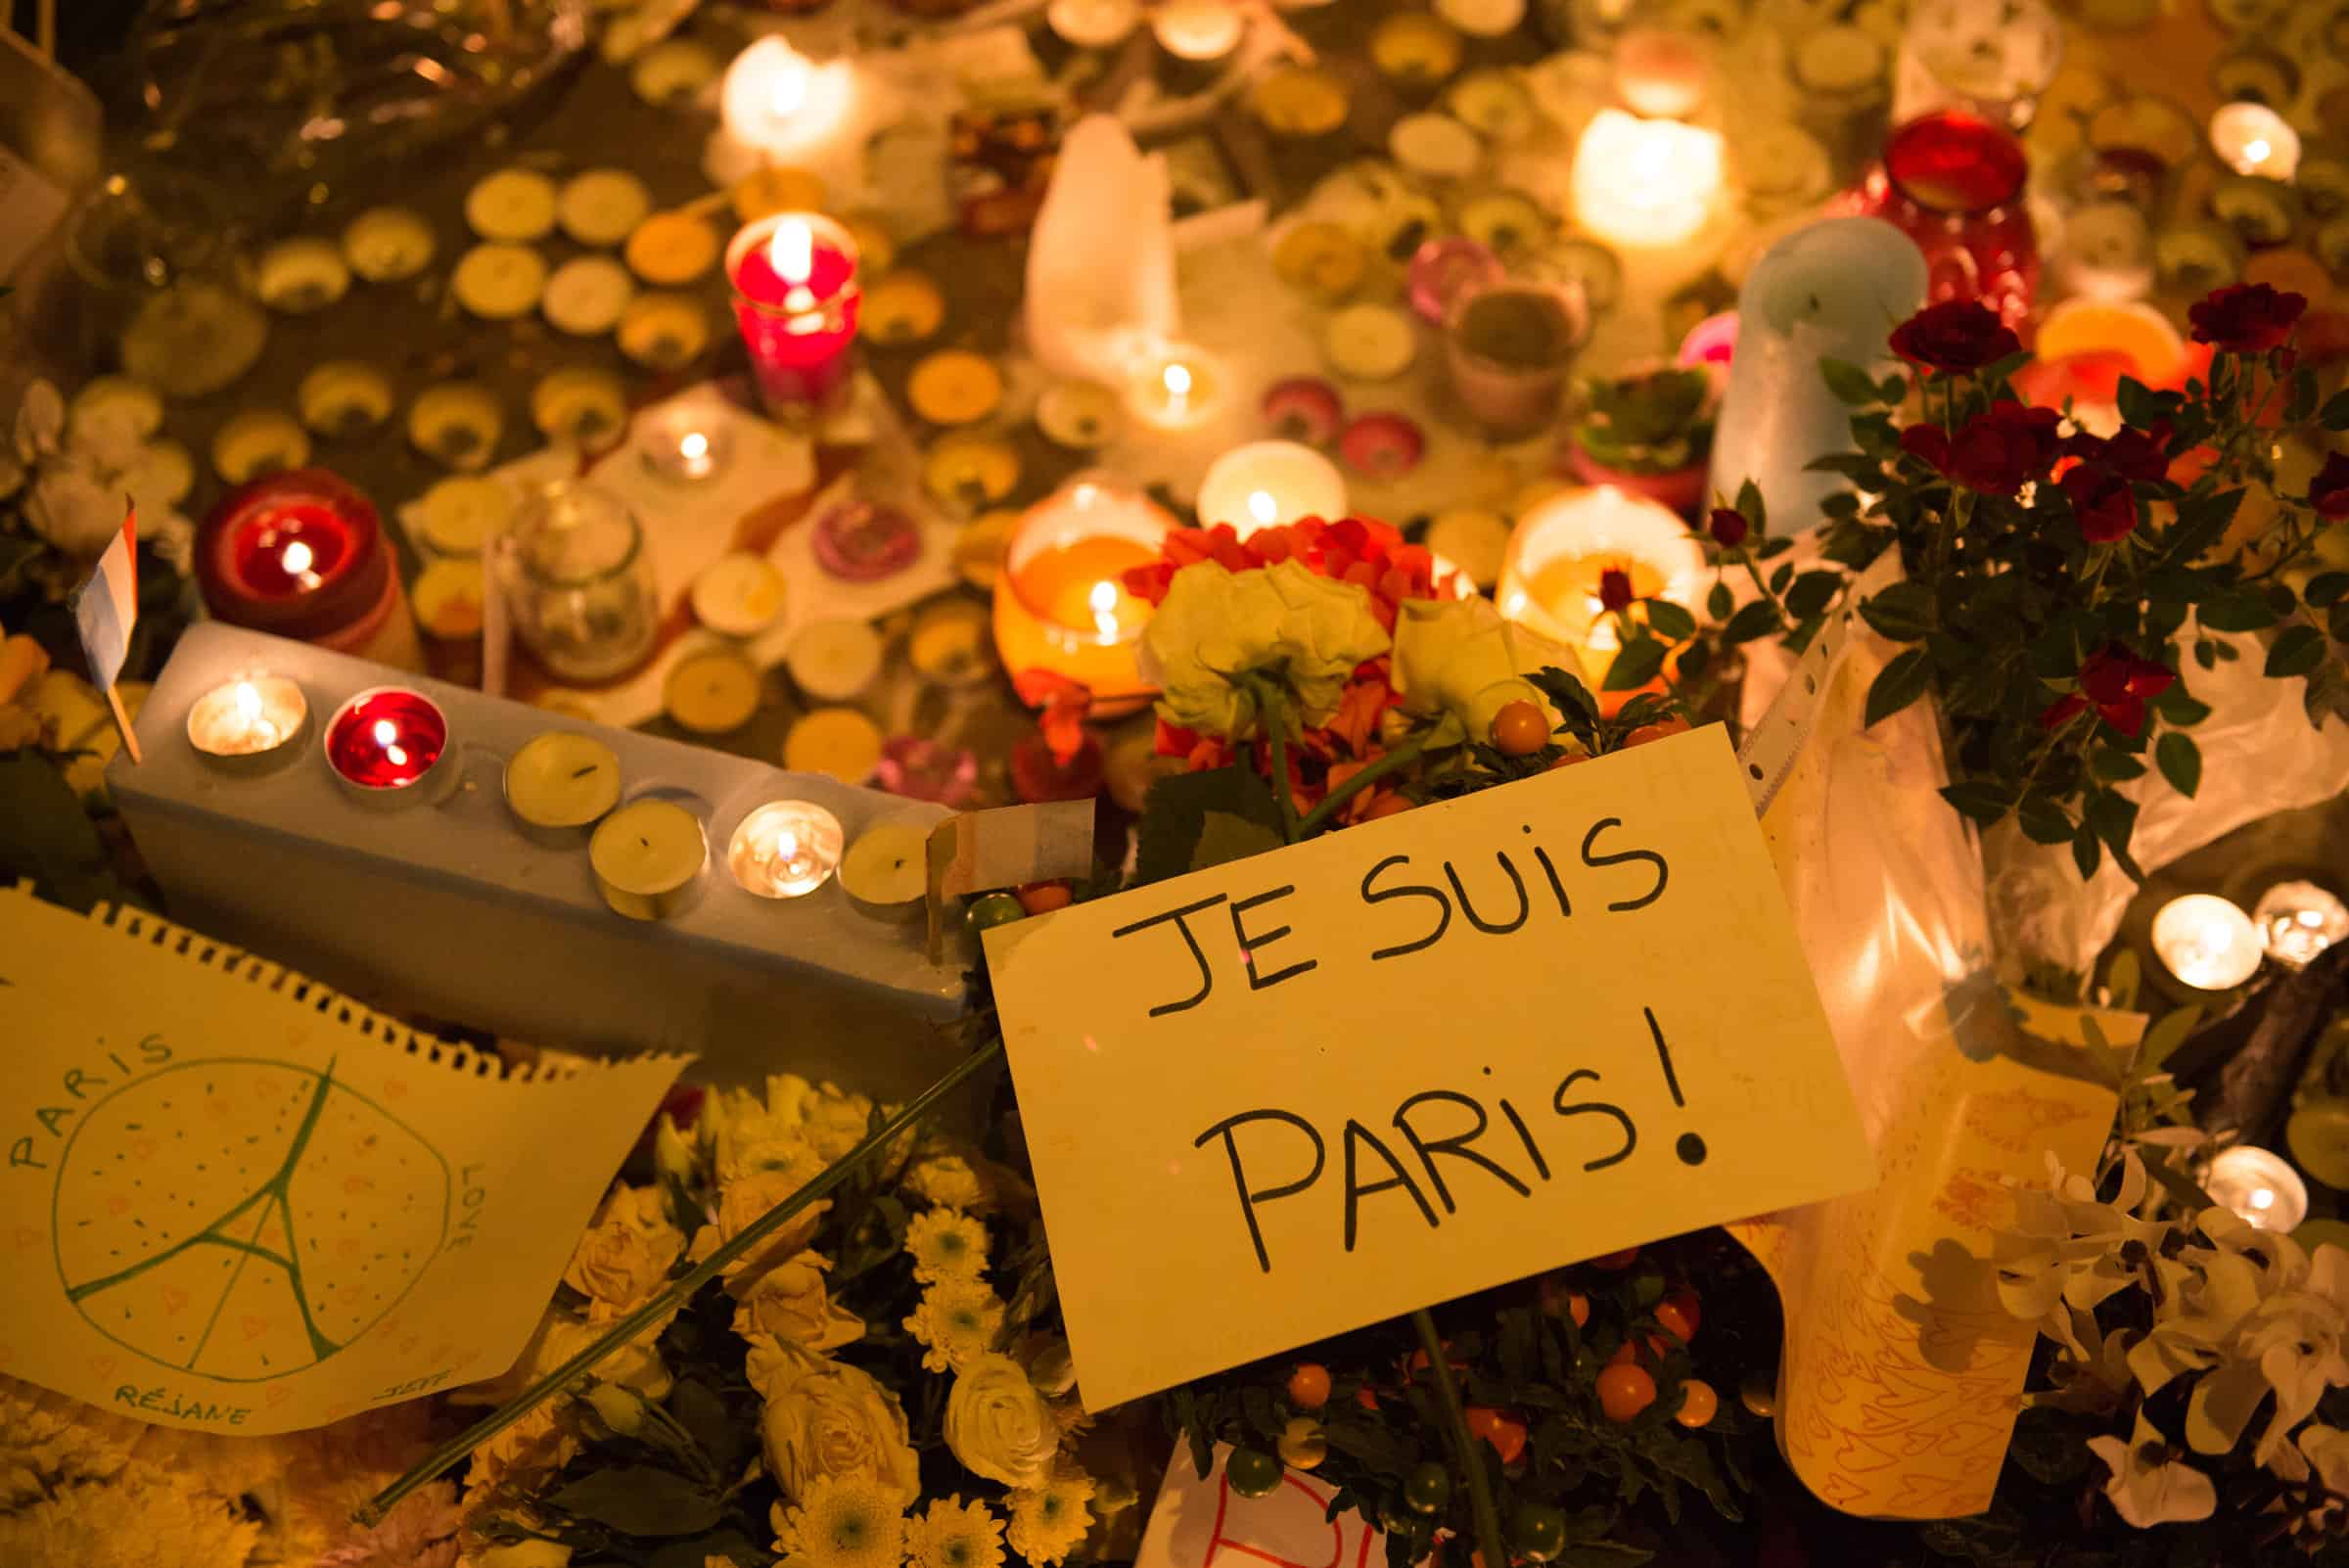 Je suis Paris. Images of peace and hope. Paris stands united even as it grieves. Palmyre Roigt for the HiP Paris Blog